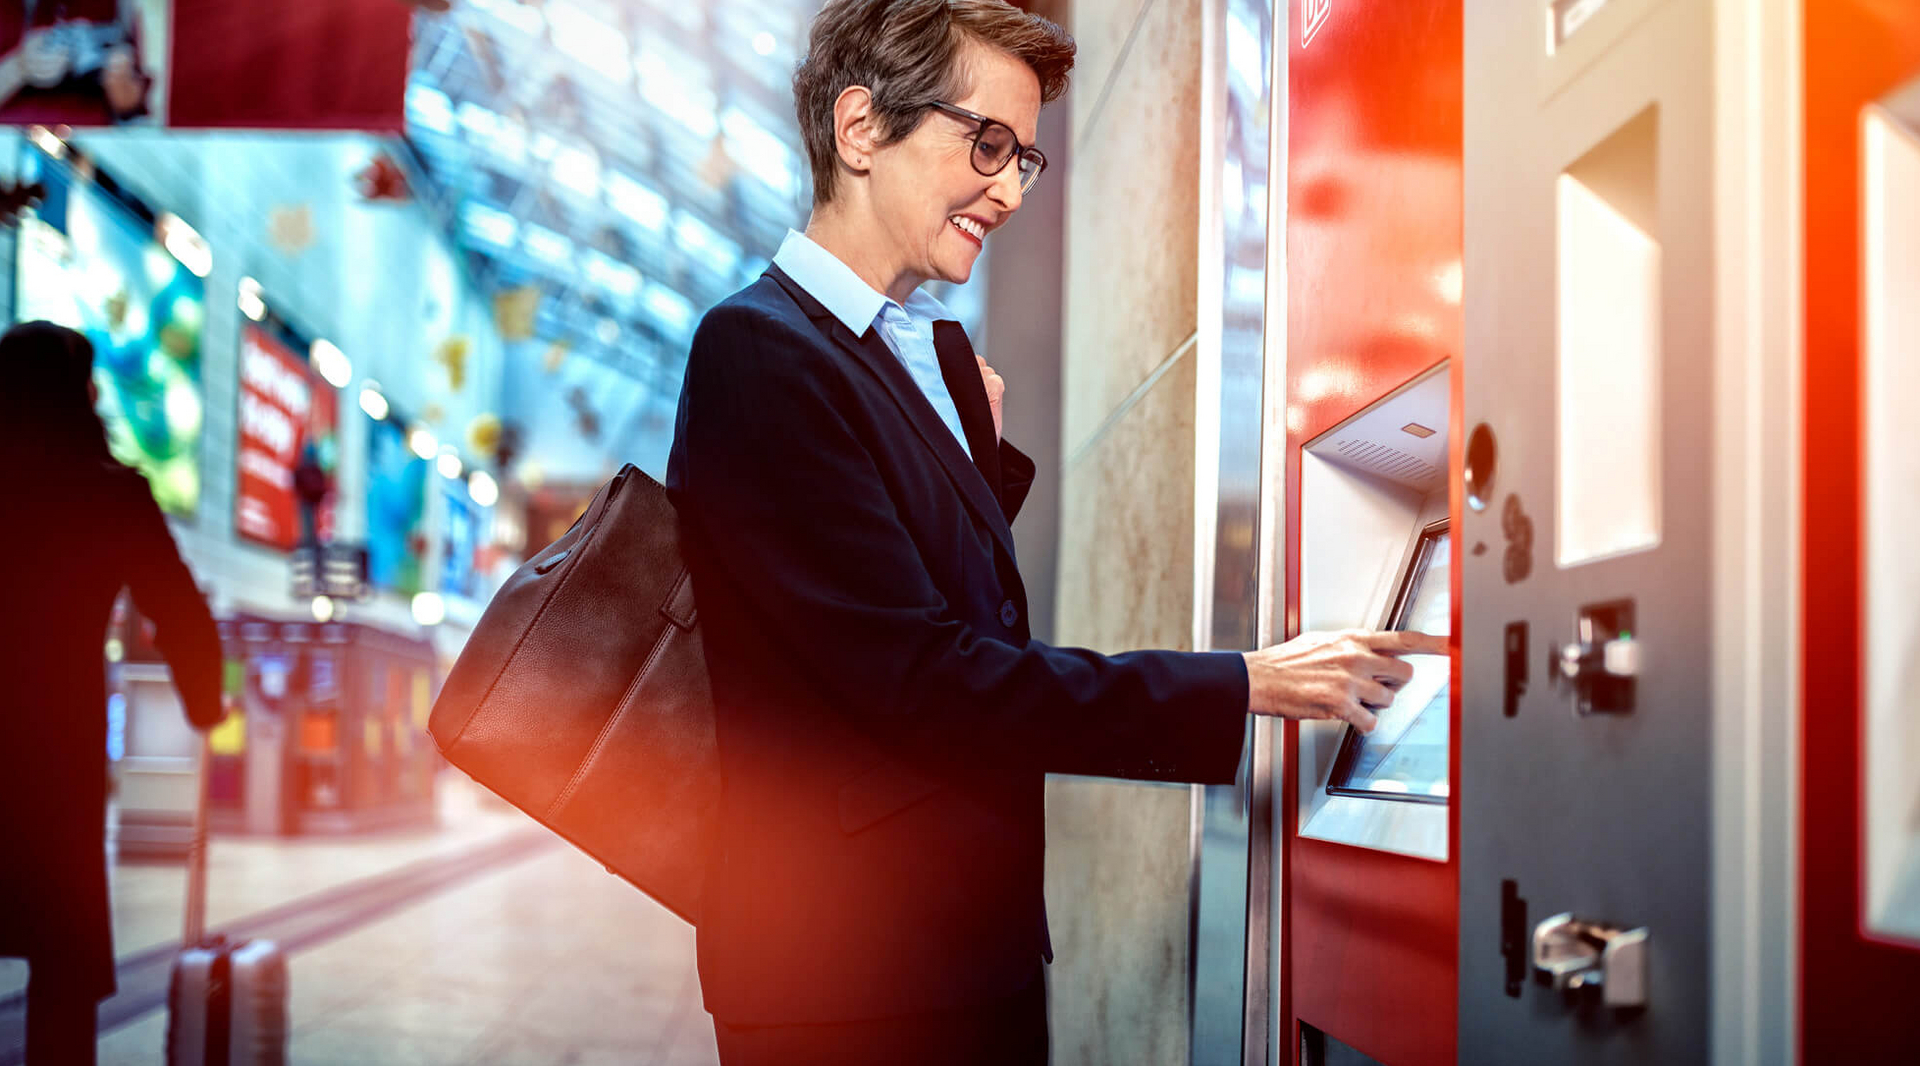 Eine Frau steht vor einem Fahrkartenautomat und tippt auf den Touchscreen.